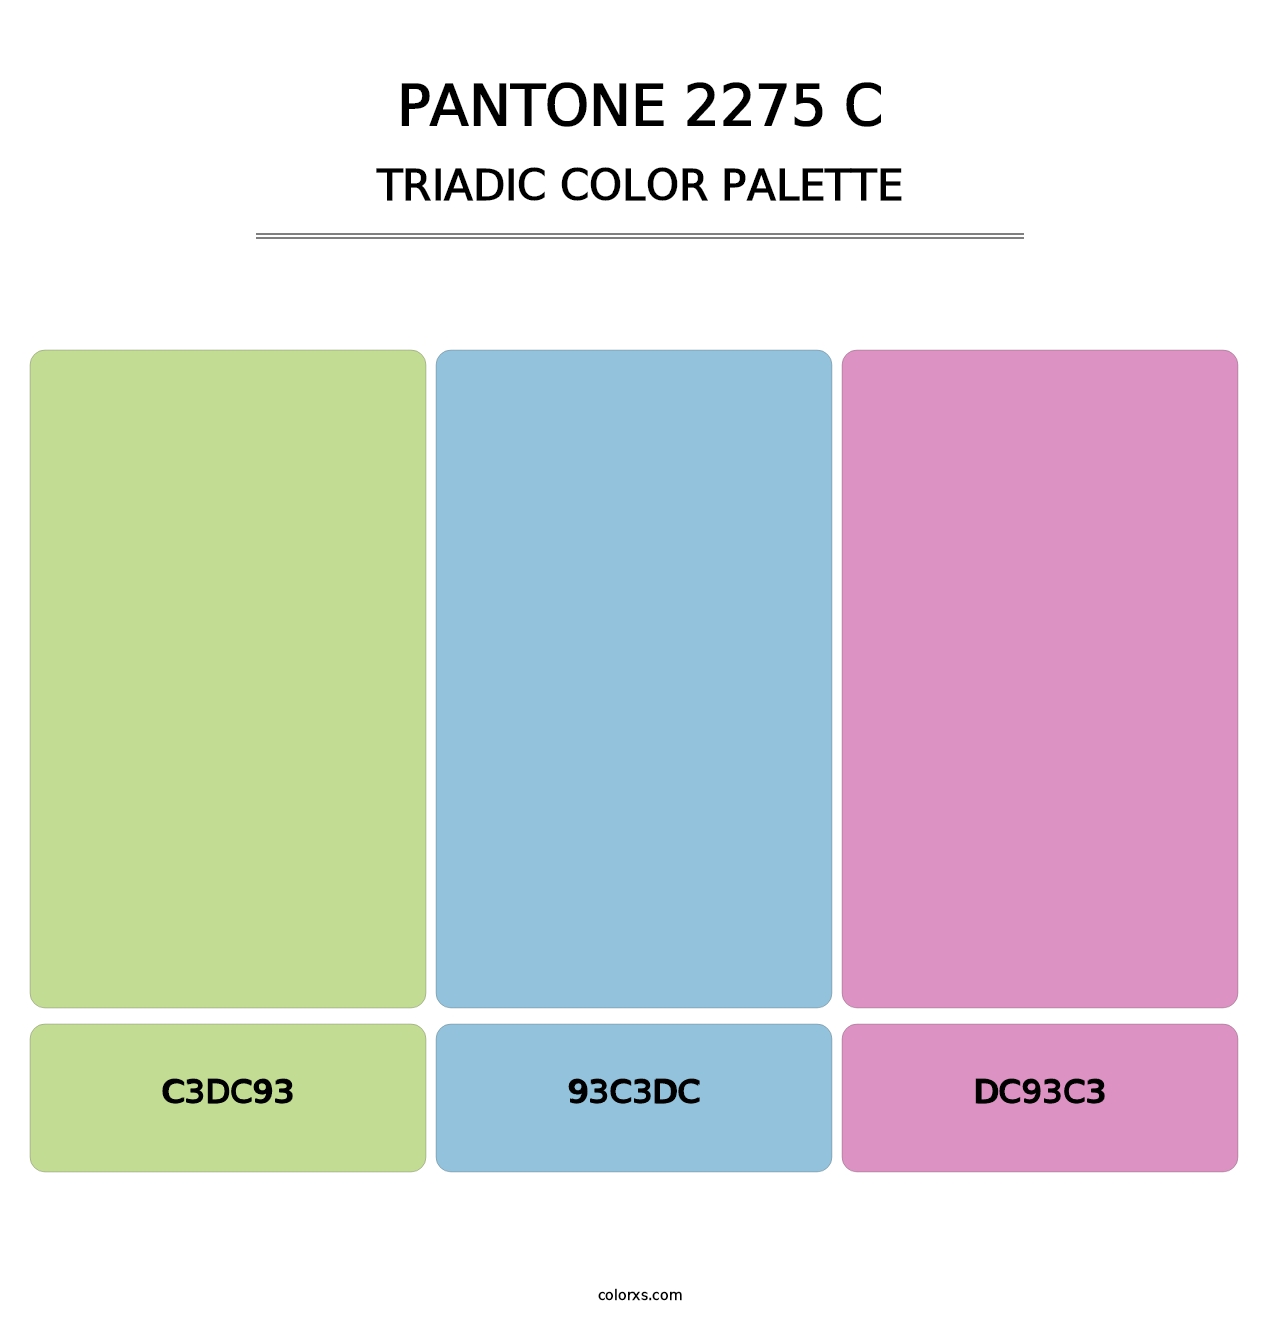 PANTONE 2275 C - Triadic Color Palette